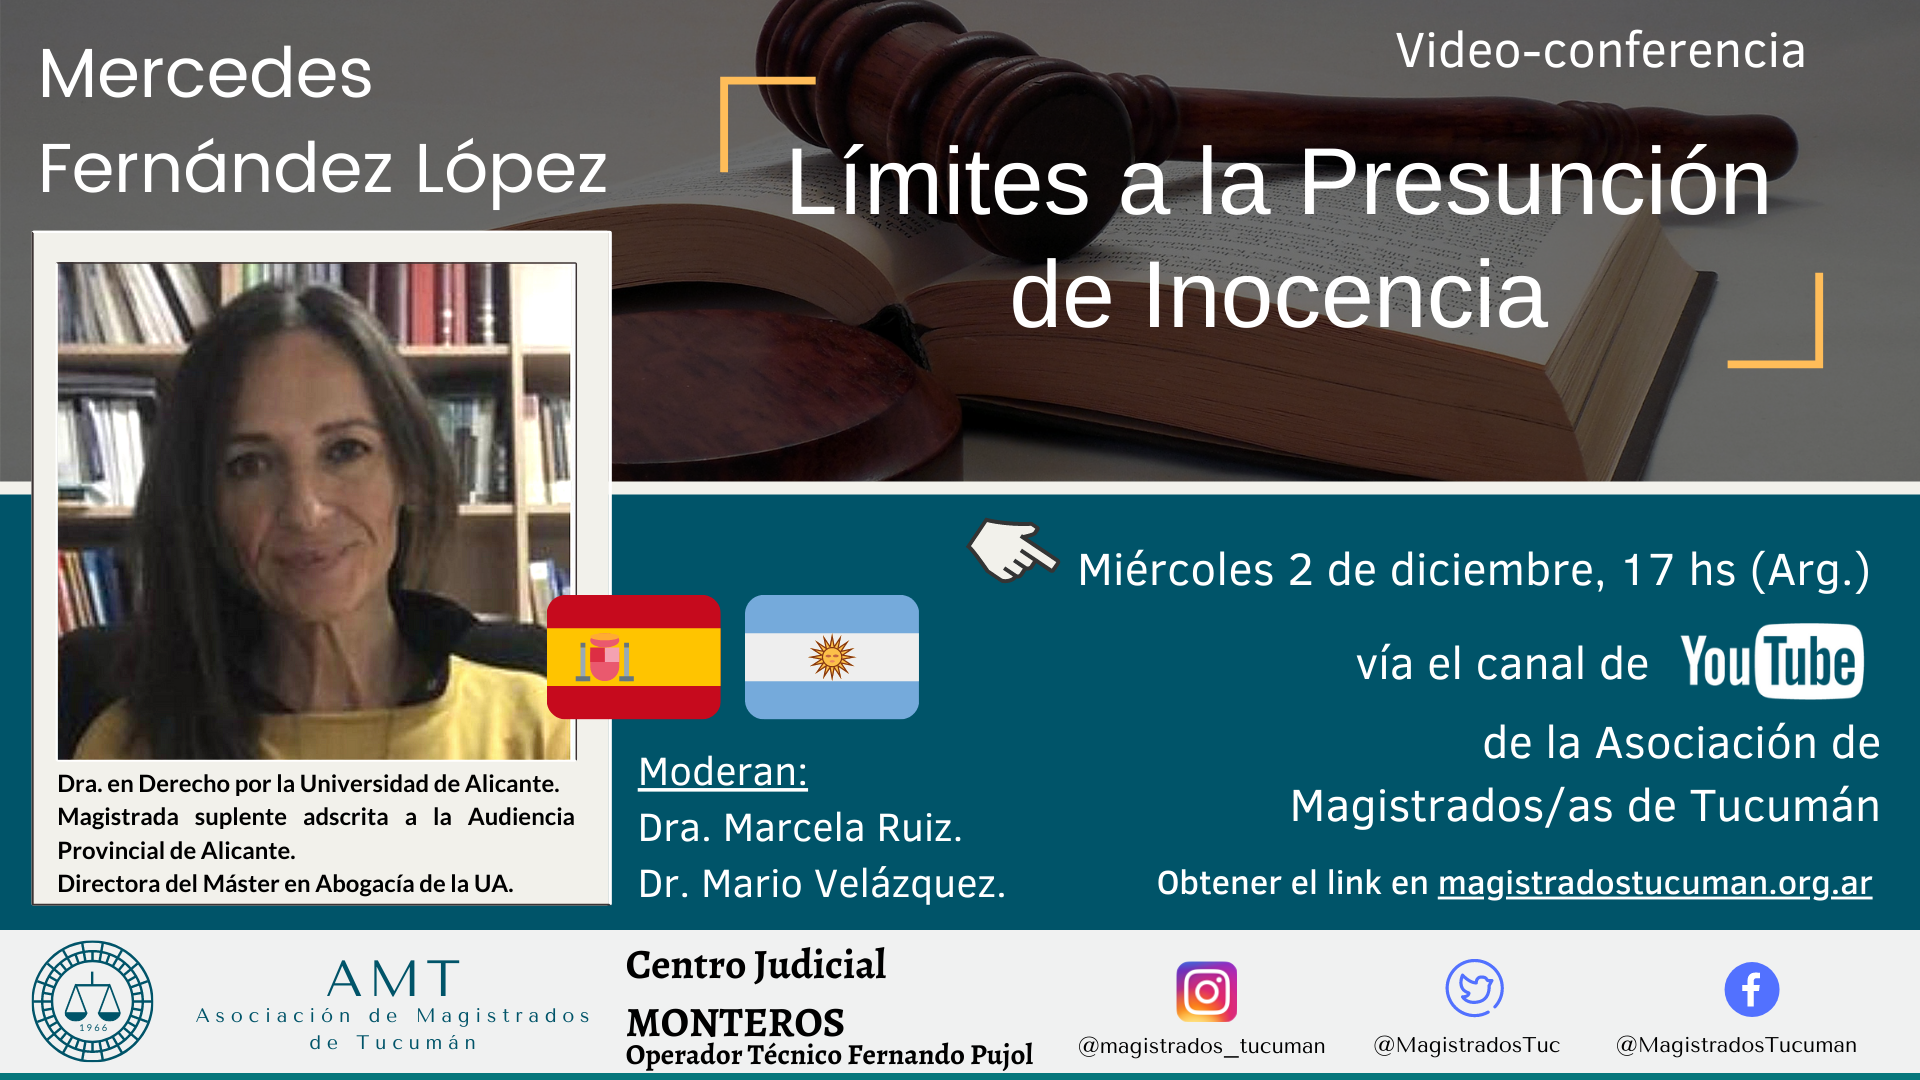 Vuelva a ver la conferencia de Mercedes Fernández López «Límites a la Presunción de Inocencia»